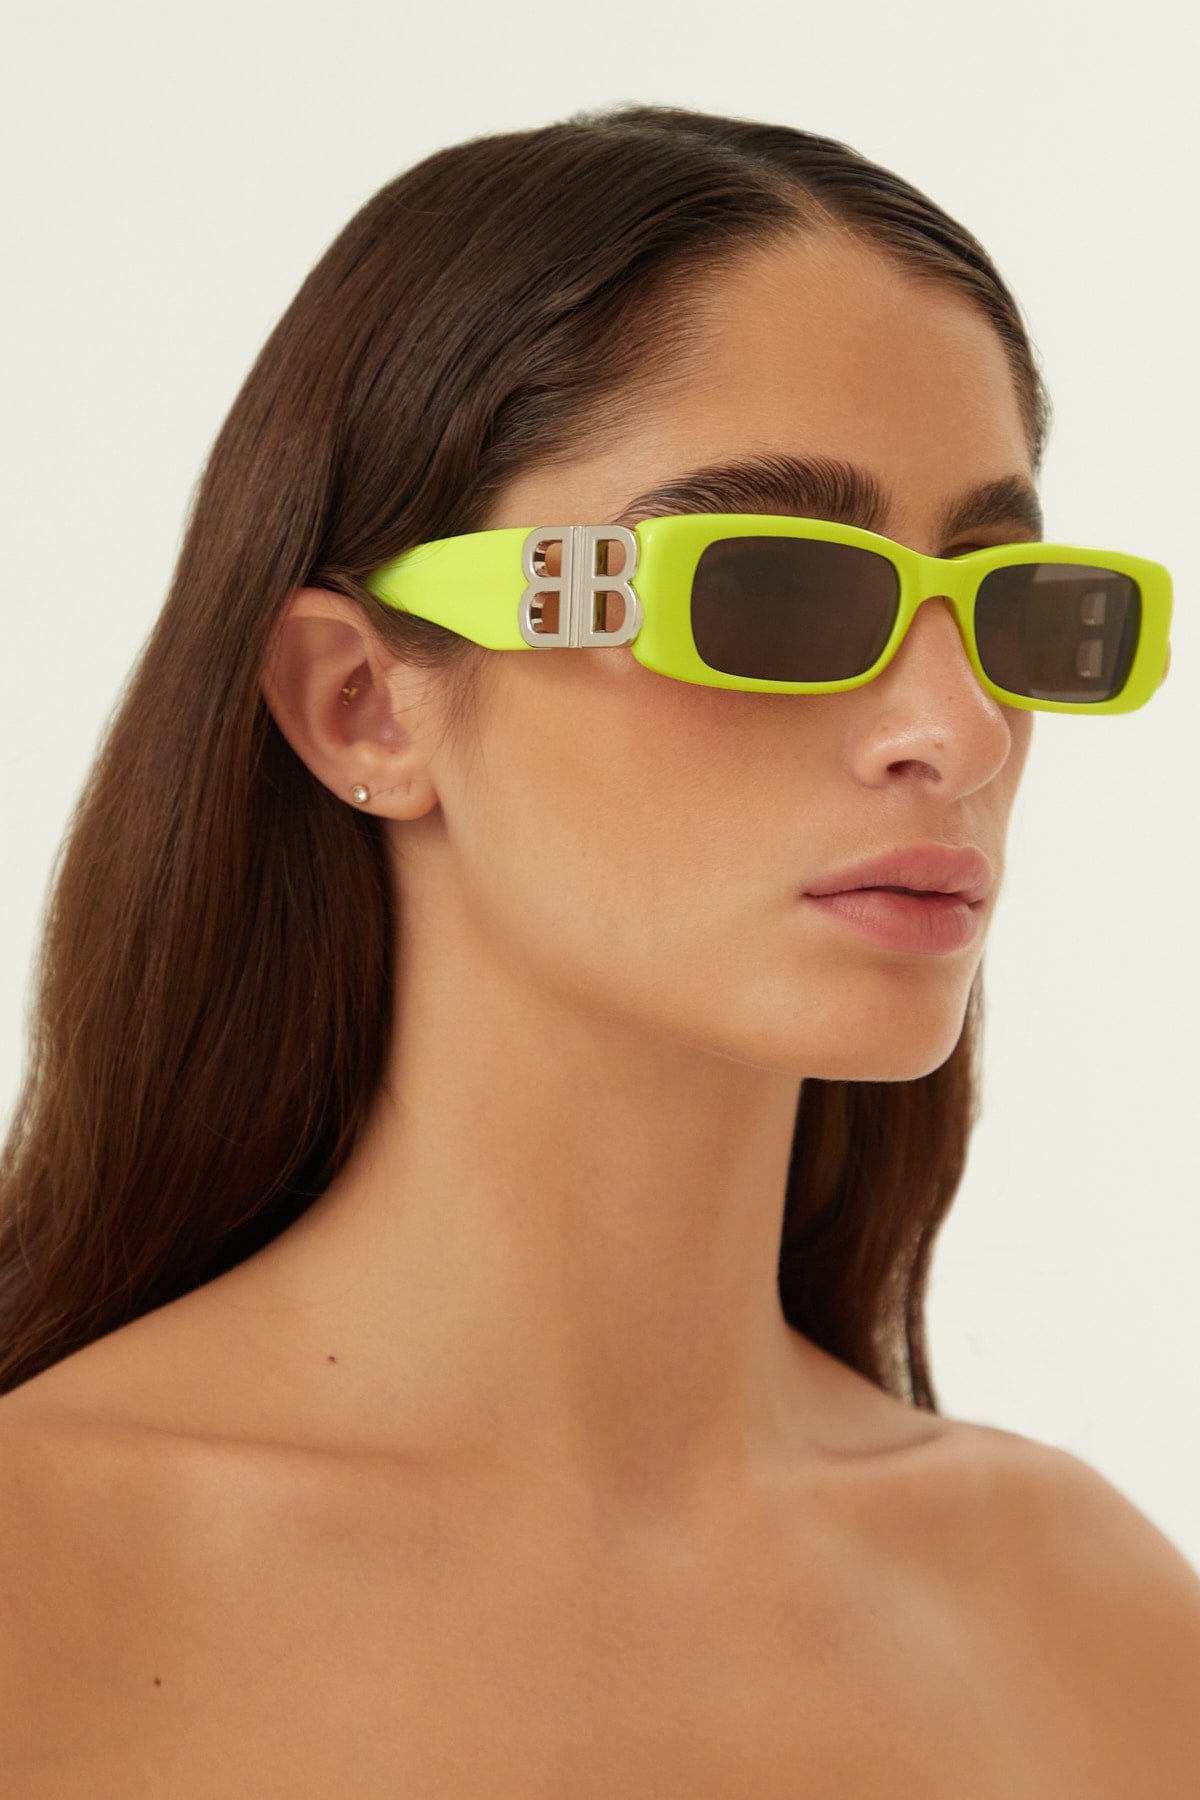 Balenciaga Dynasty micro fluor sunglasses featuring BB logo - Eyewear Club